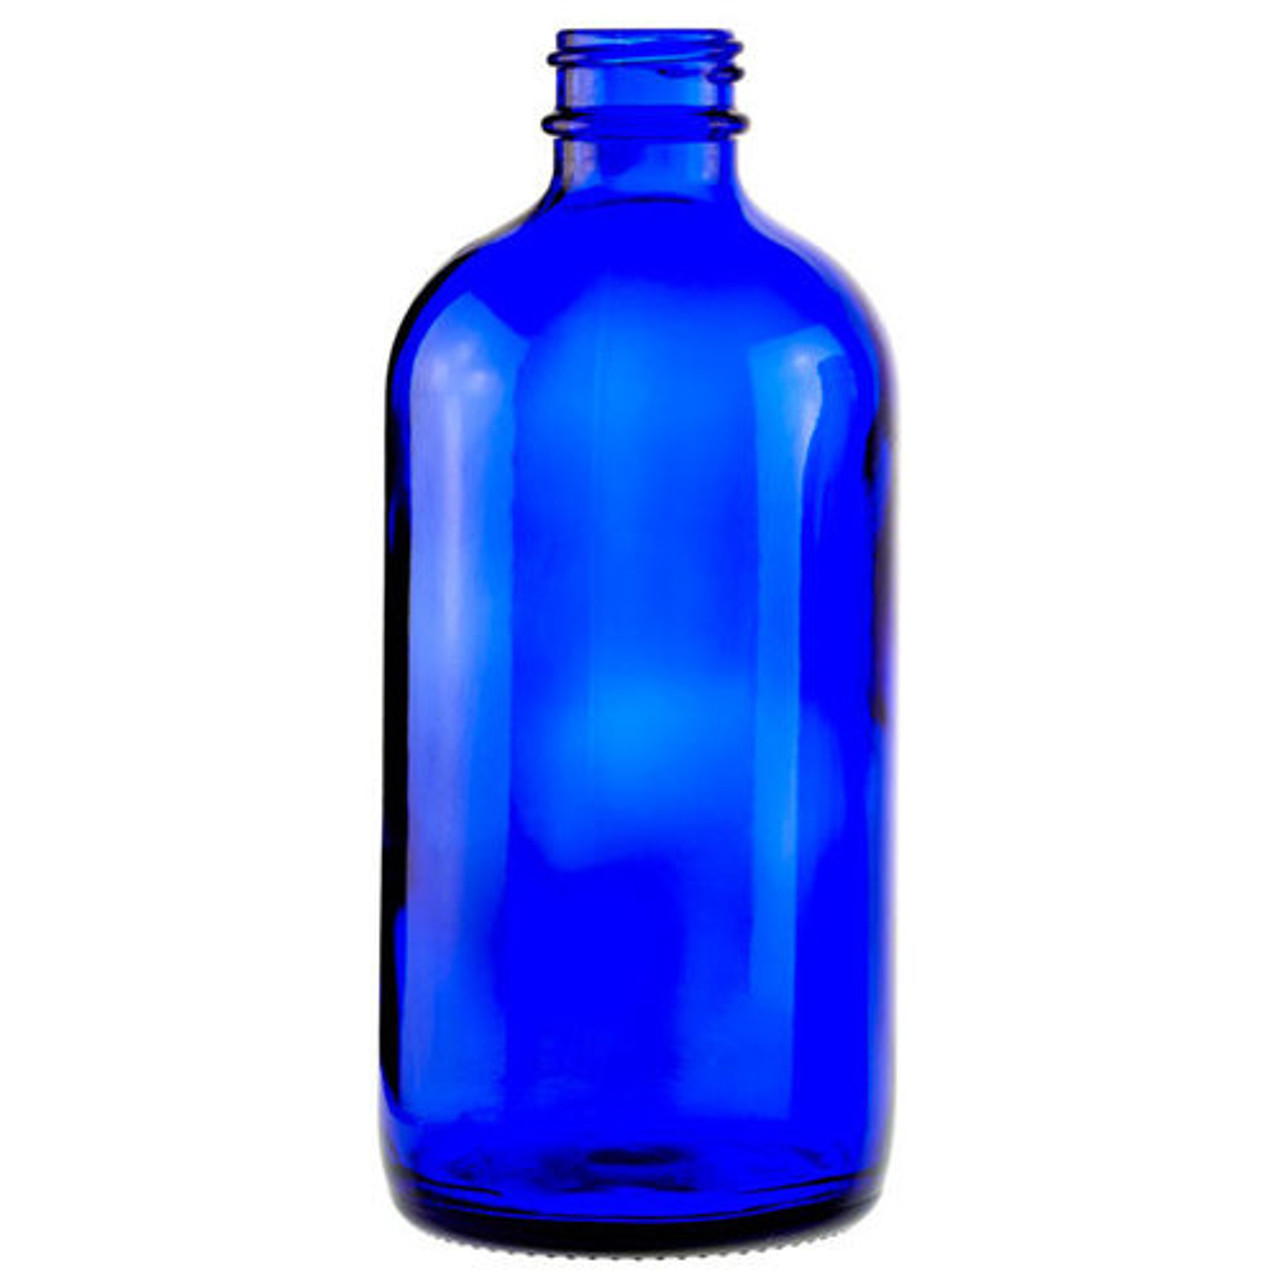 8 oz Blue Glass Boston Round Bottle 28-400 Neck Finish